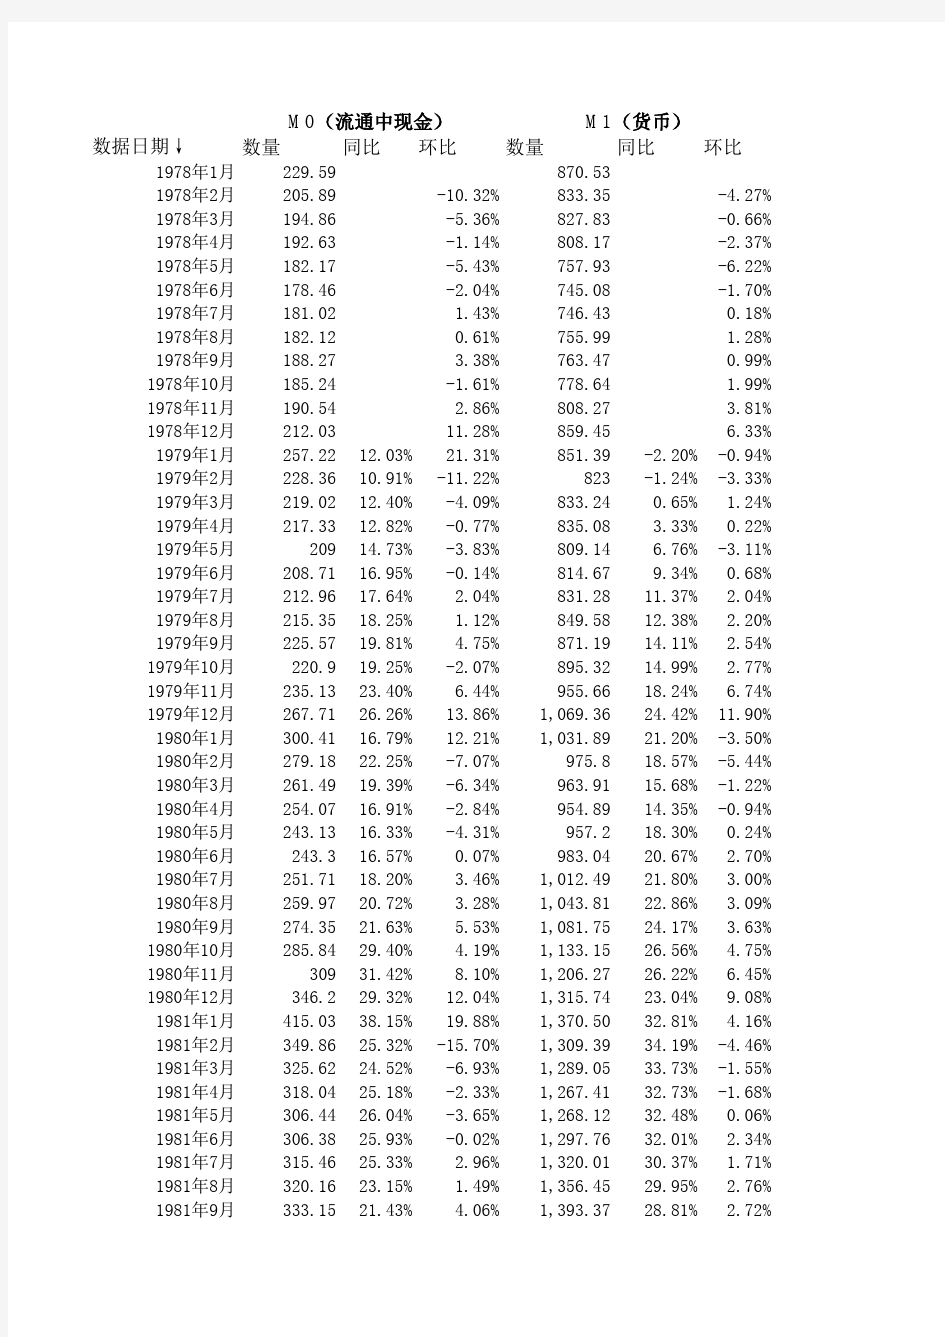 中国历年货币供应量(M0,M1,M2)历史数据(截止到2012年5月份数据)